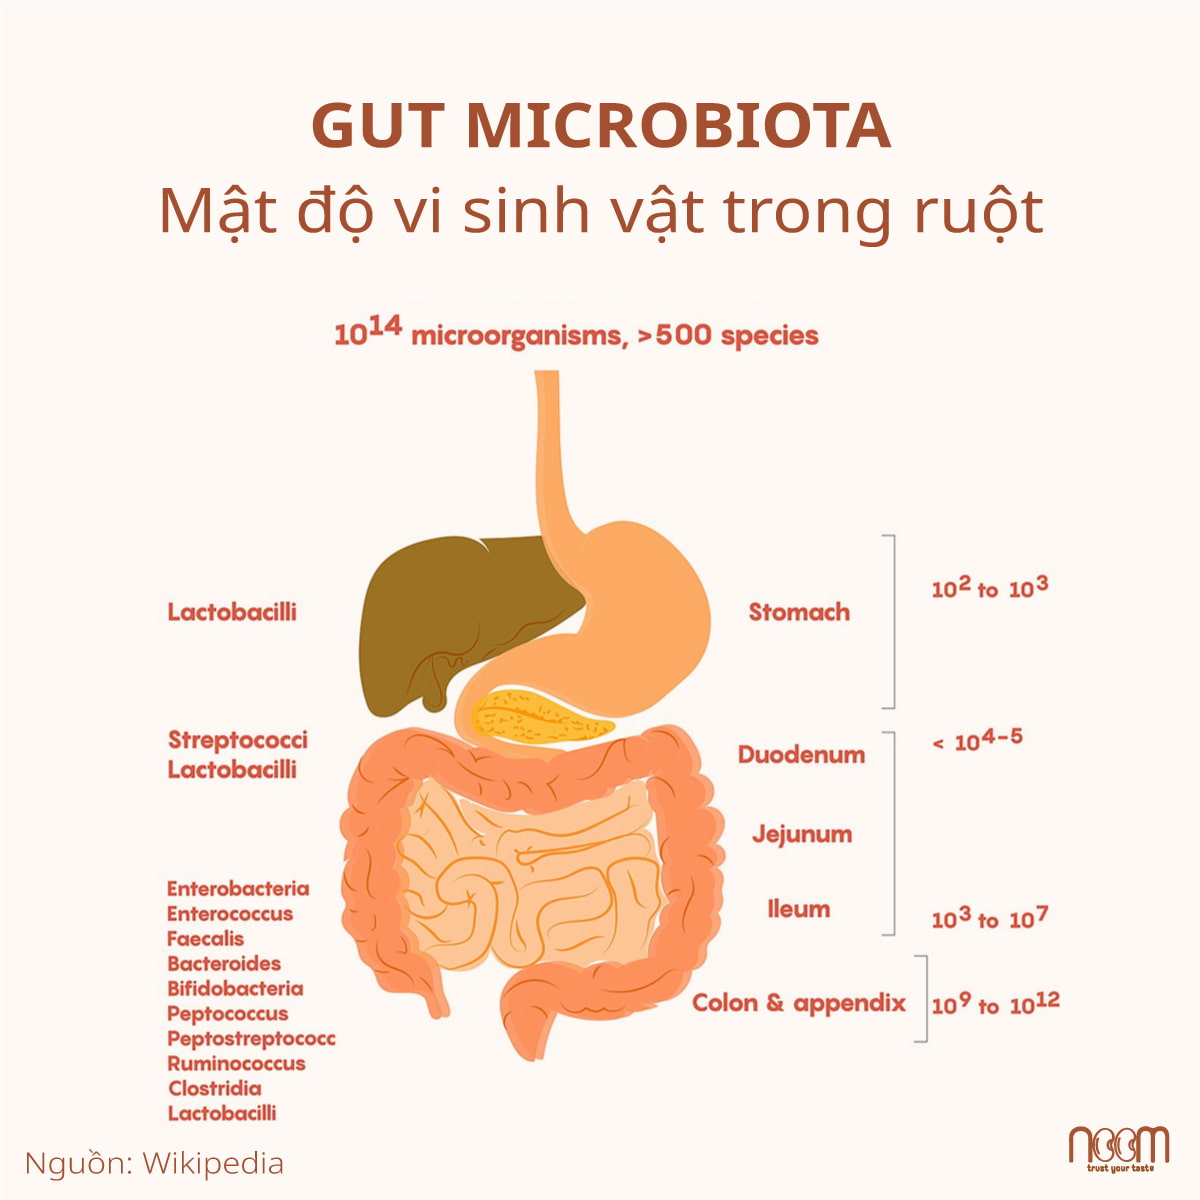 Mật độ vi sinh vật trong ruột và xu hướng chung về gia tăng độ phức tạp và nồng độ của vi khuẩn xuống đường tiêu hóa. Nguồn: Wikipedia